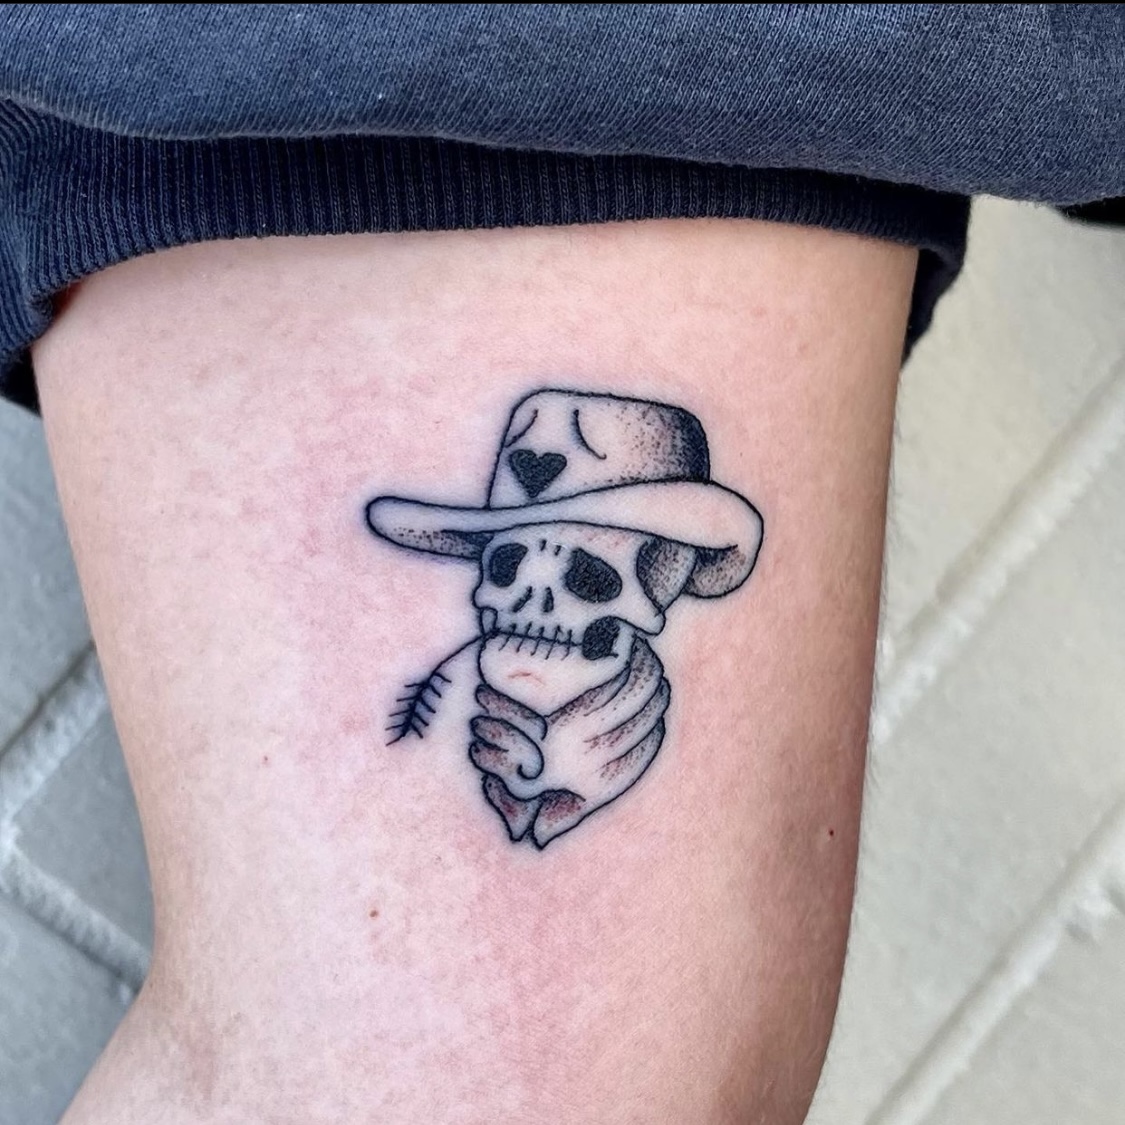 Skull tattoo from best tattoo shop in dallas texas